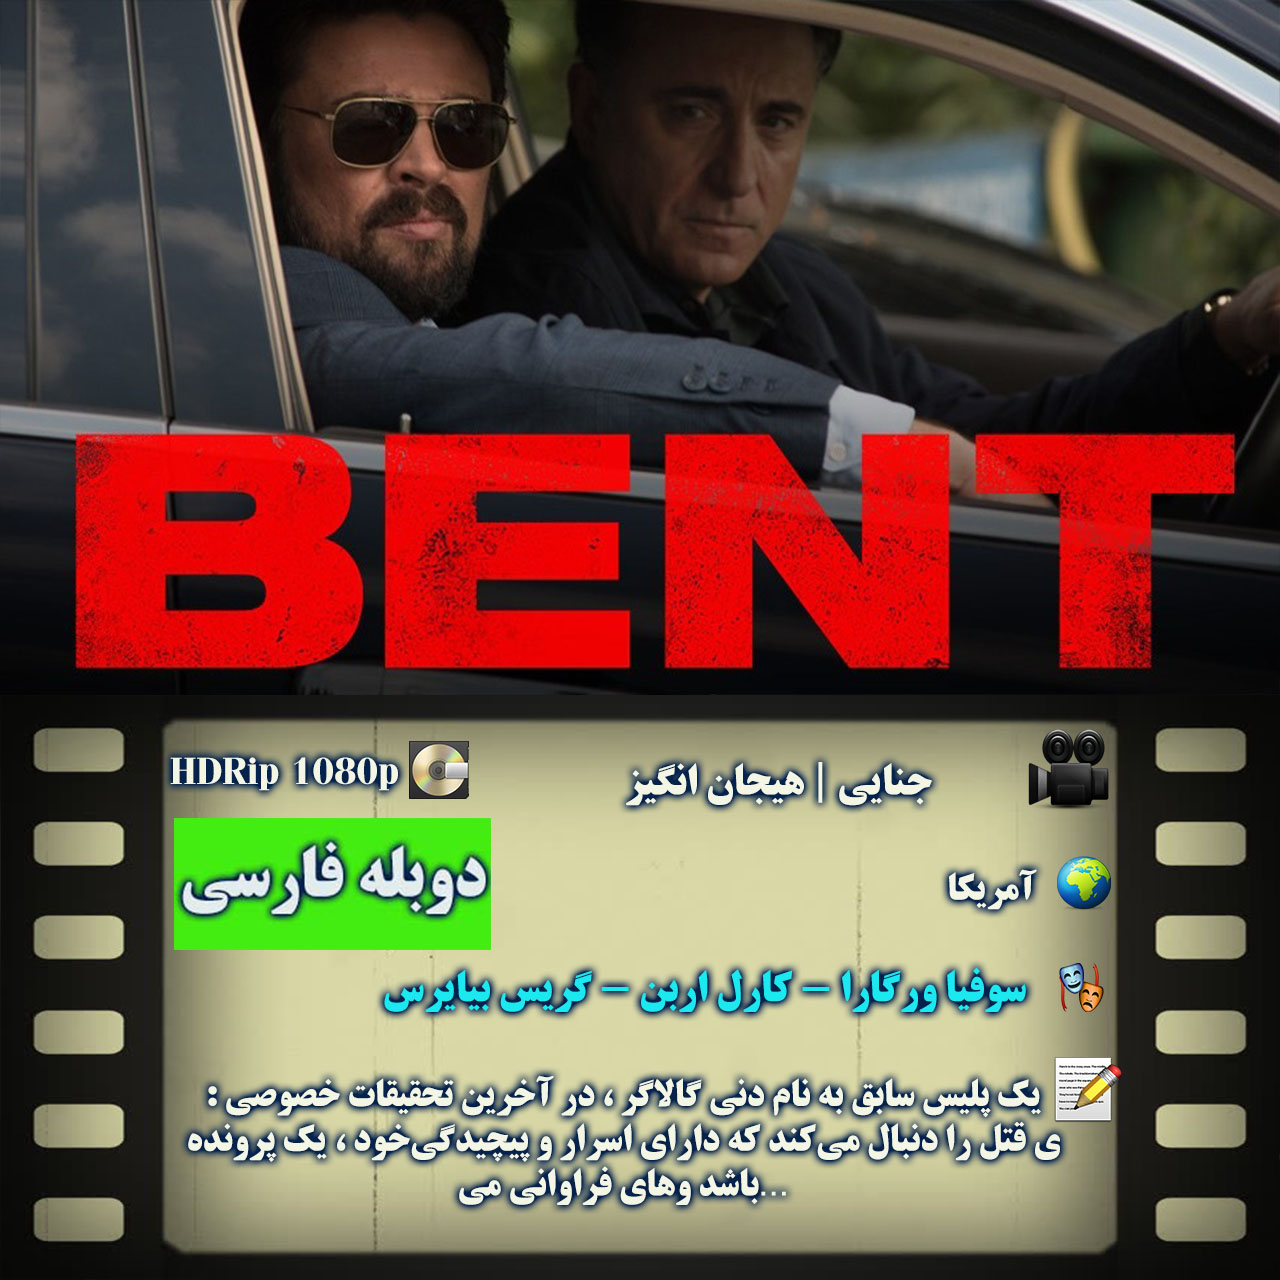 دانلود فیلم بنت 2018 Bent دوبله فارسی